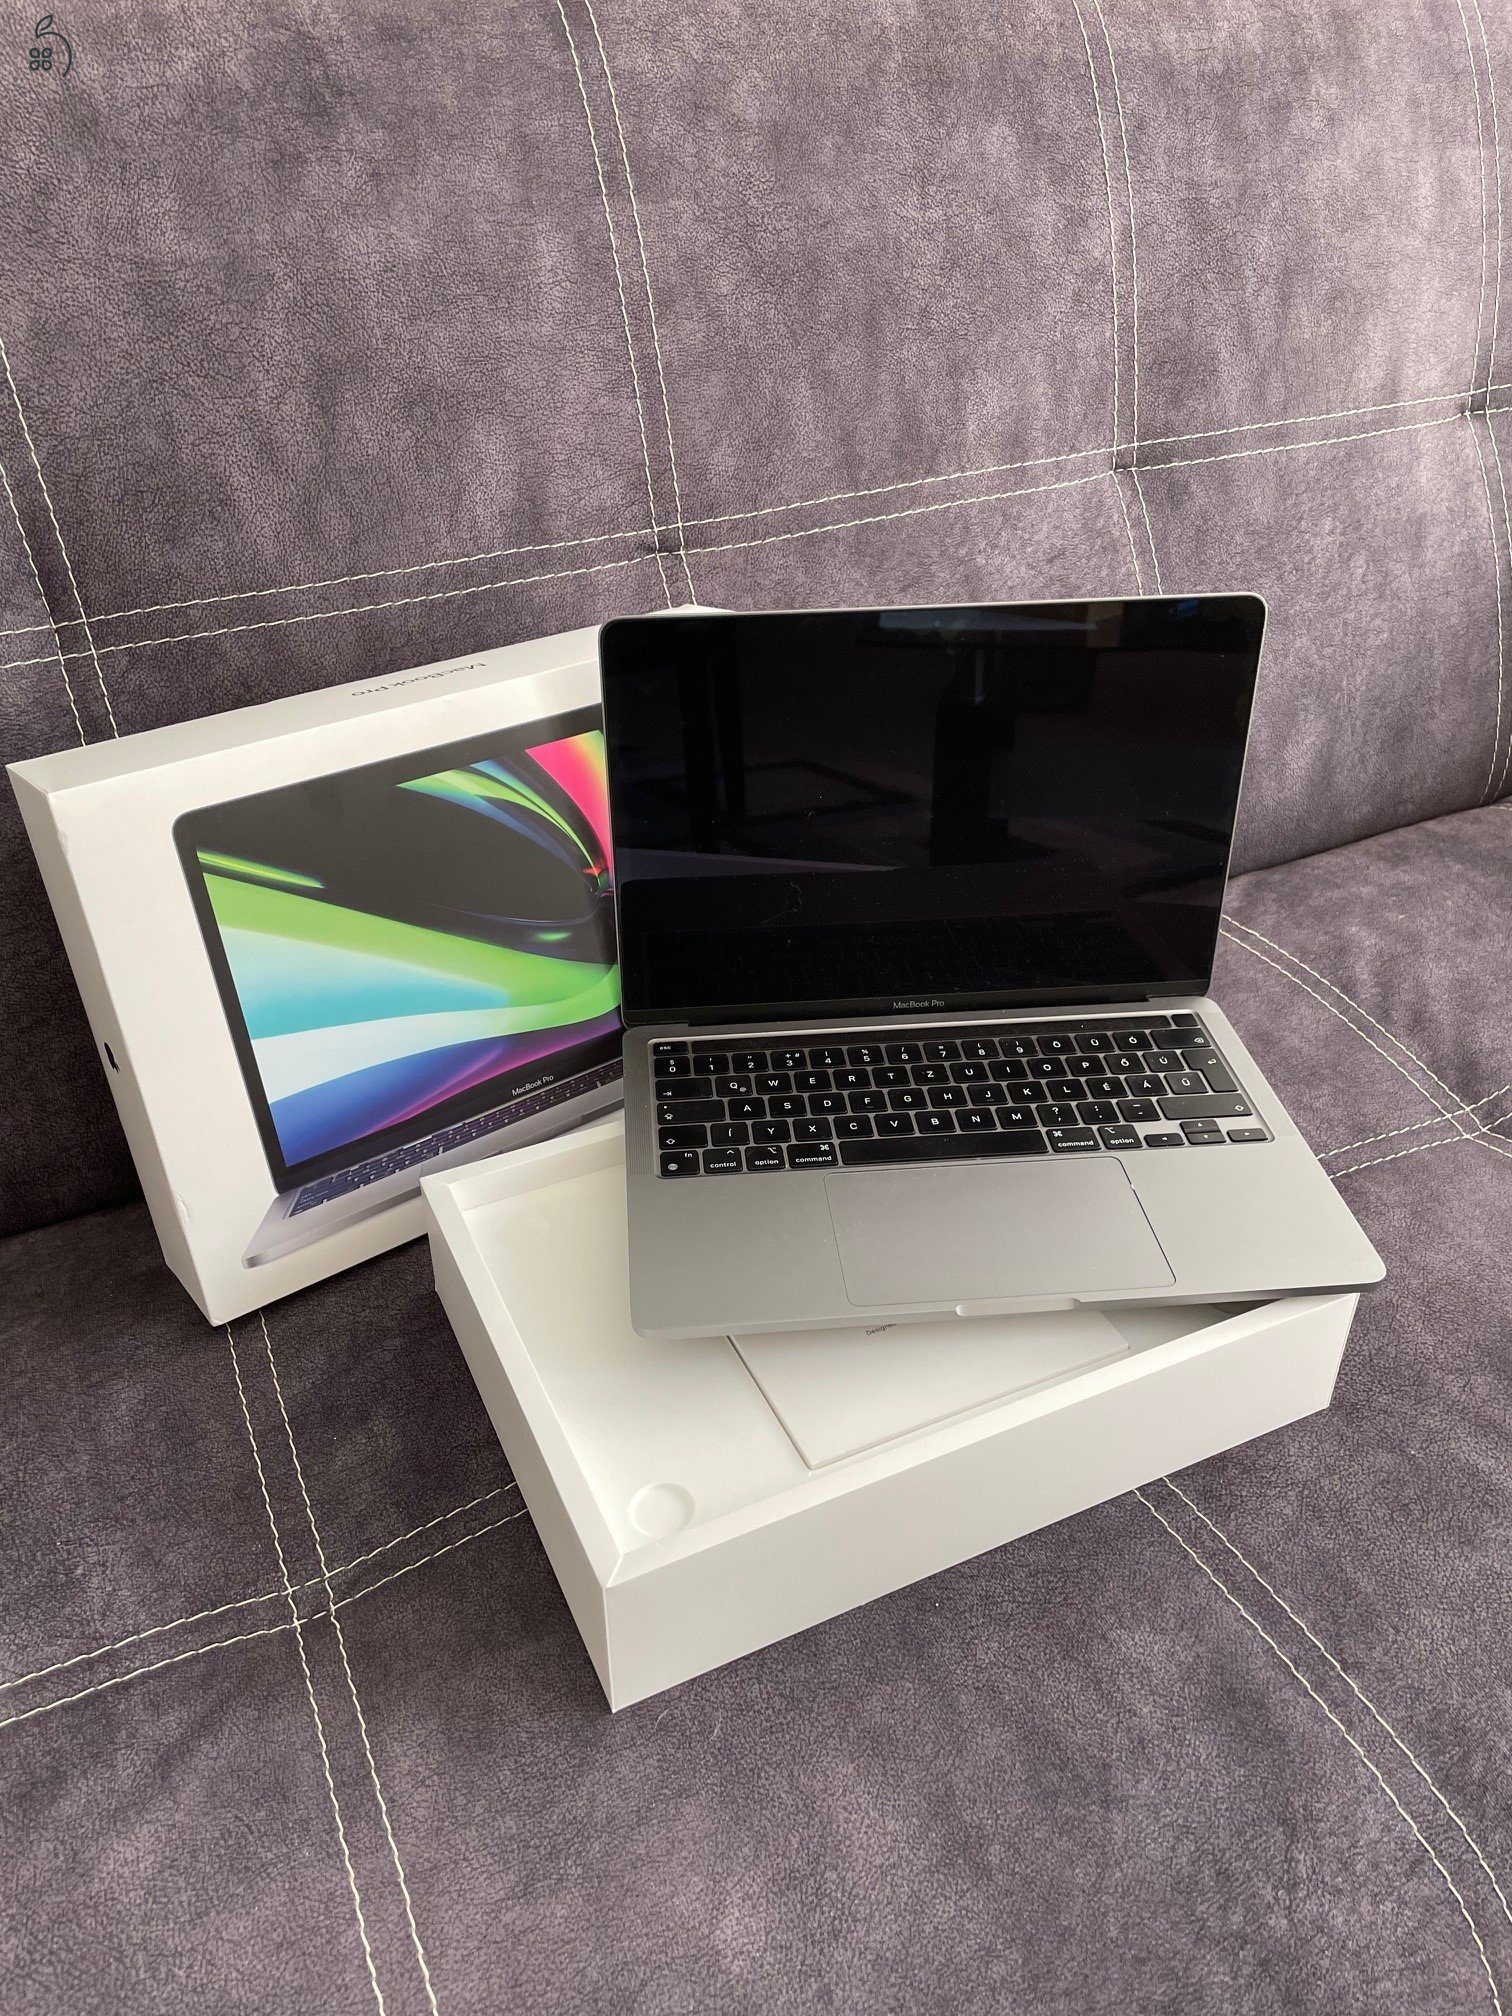 Eladó egy szuperkonfigurációs M1 processzoros MacBook Pro 13